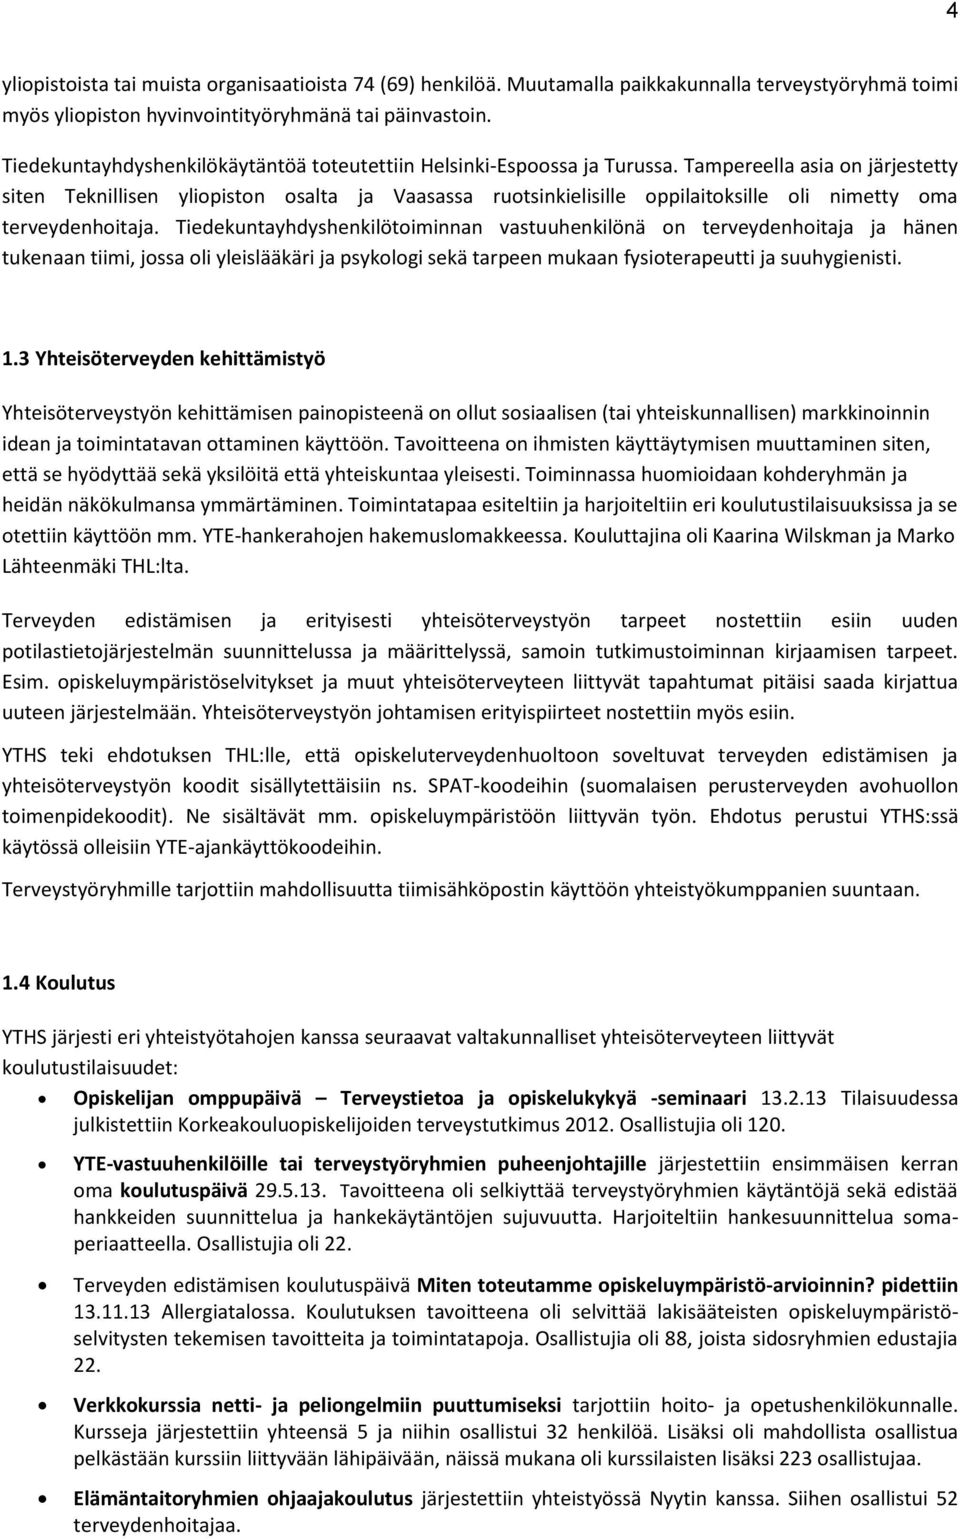 Tampereella asia on järjestetty siten Teknillisen yliopiston osalta ja Vaasassa ruotsinkielisille oppilaitoksille oli nimetty oma terveydenhoitaja.